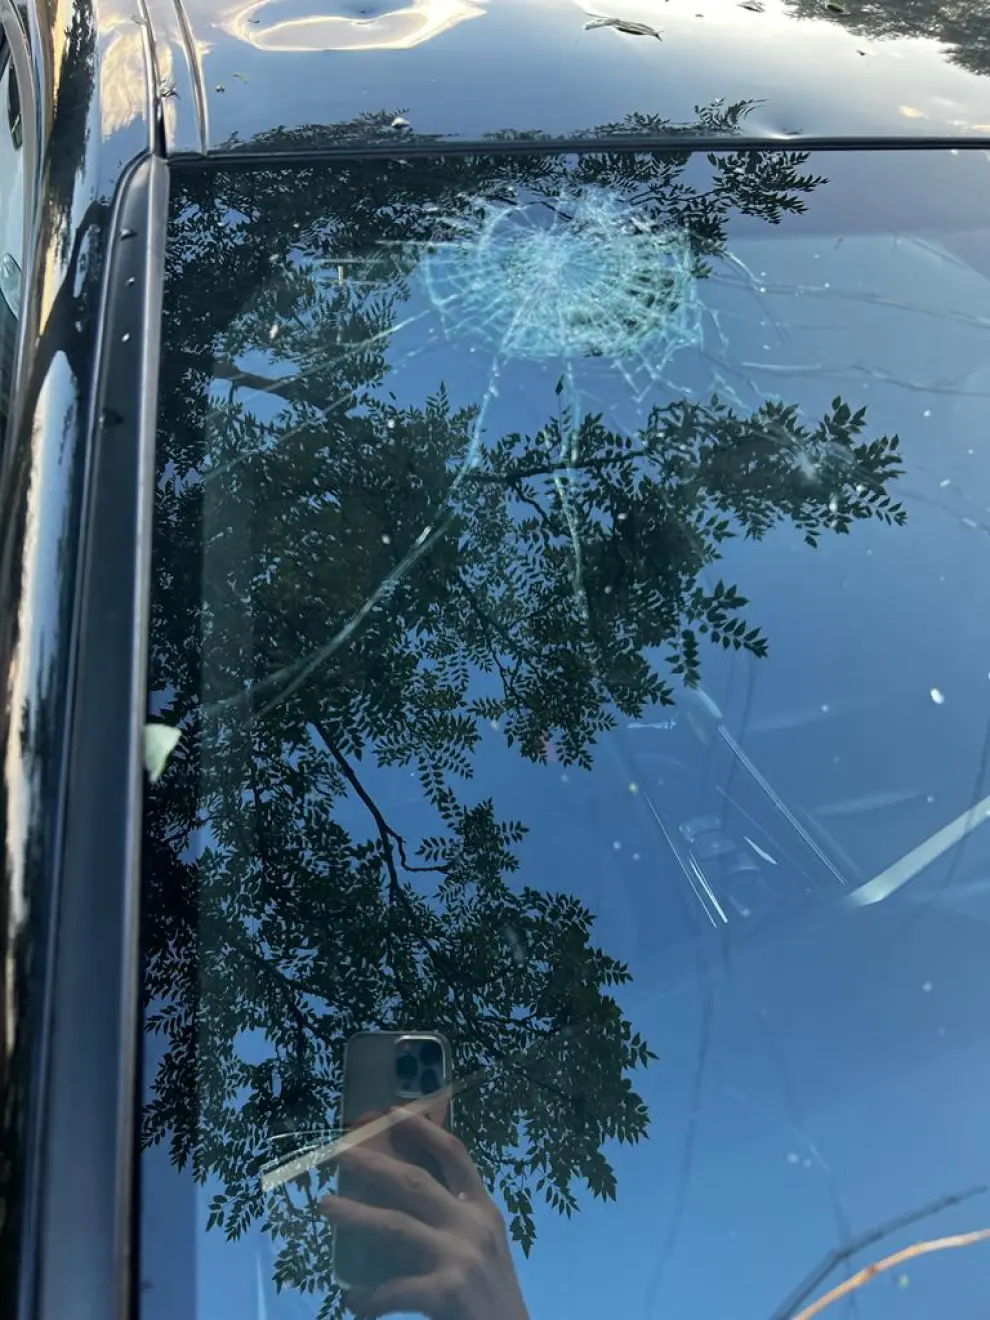 Bolas de granizo "como ladrillos" causan daños en coches y viviendas de Vencillón.